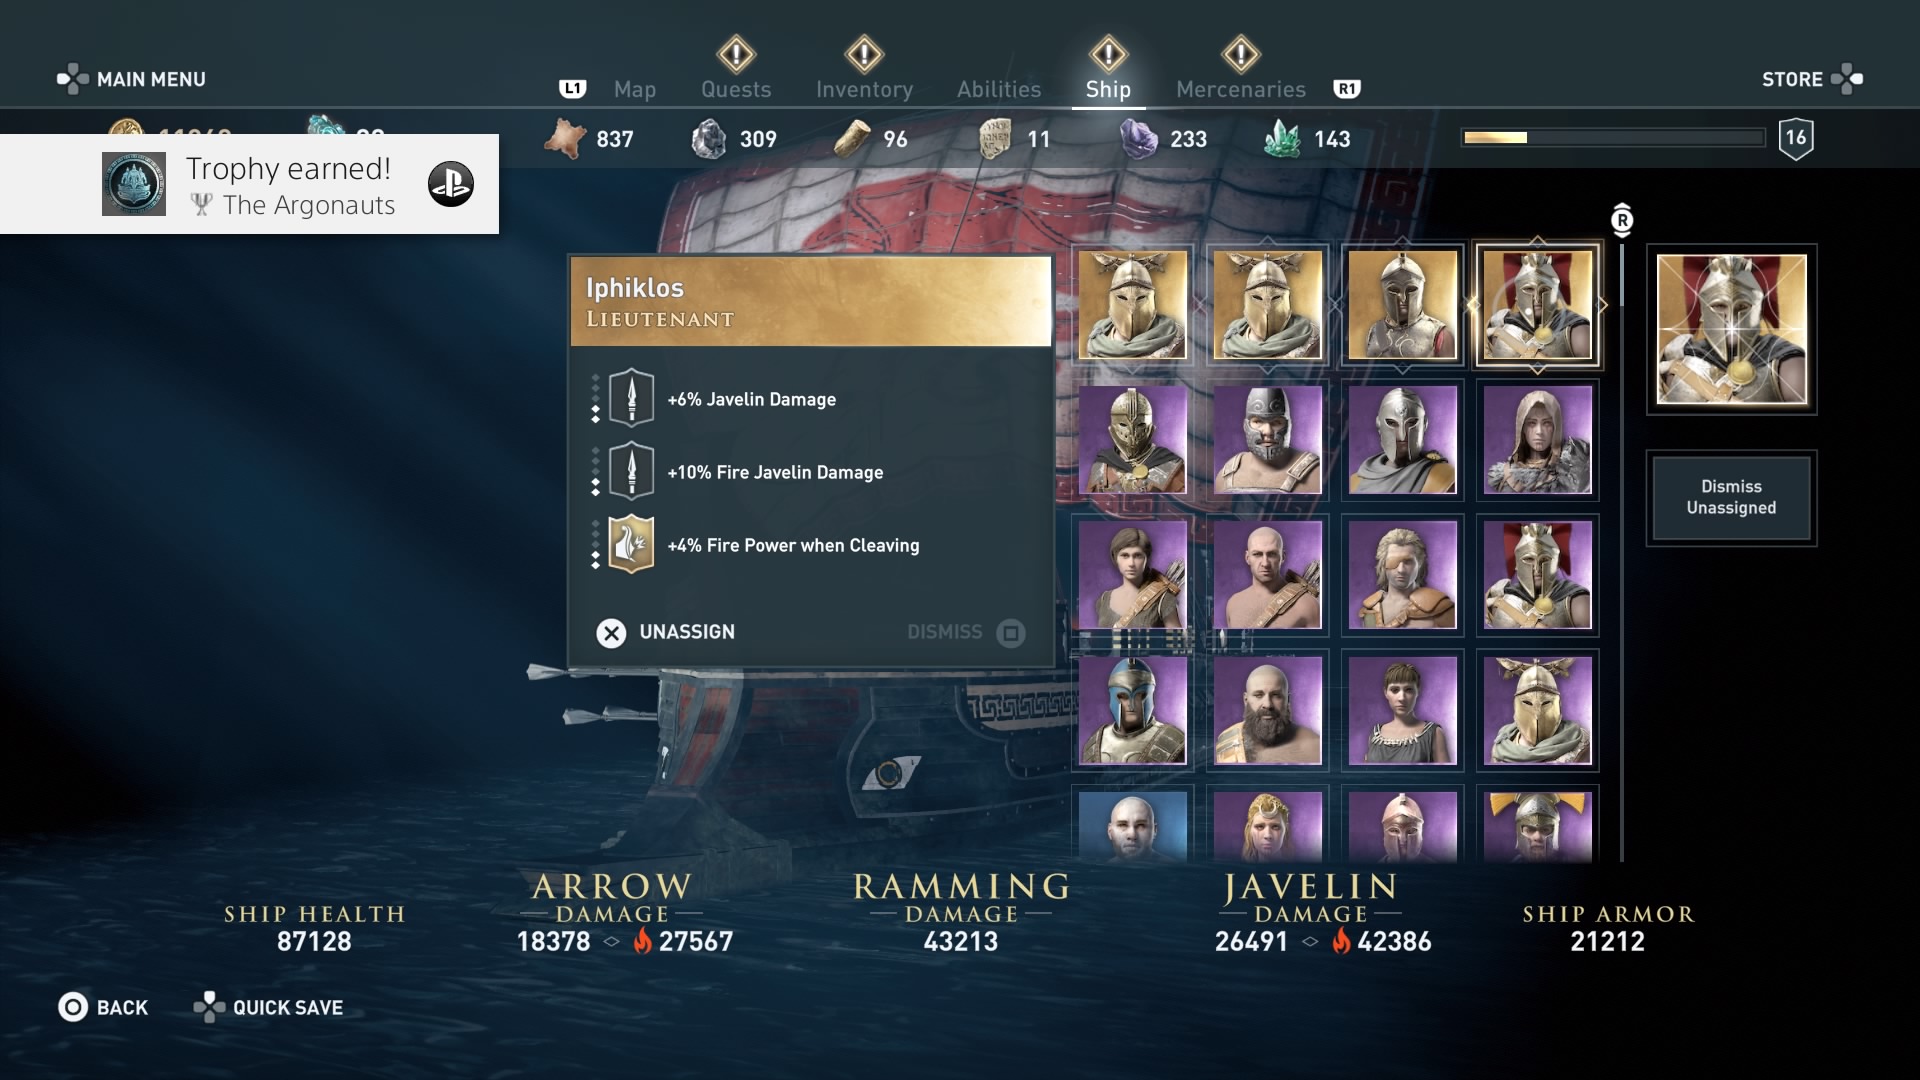 Ein wichtiges Element in Assassin's Creed Odyssey ist die Zusammenstellung der Schiffscrew